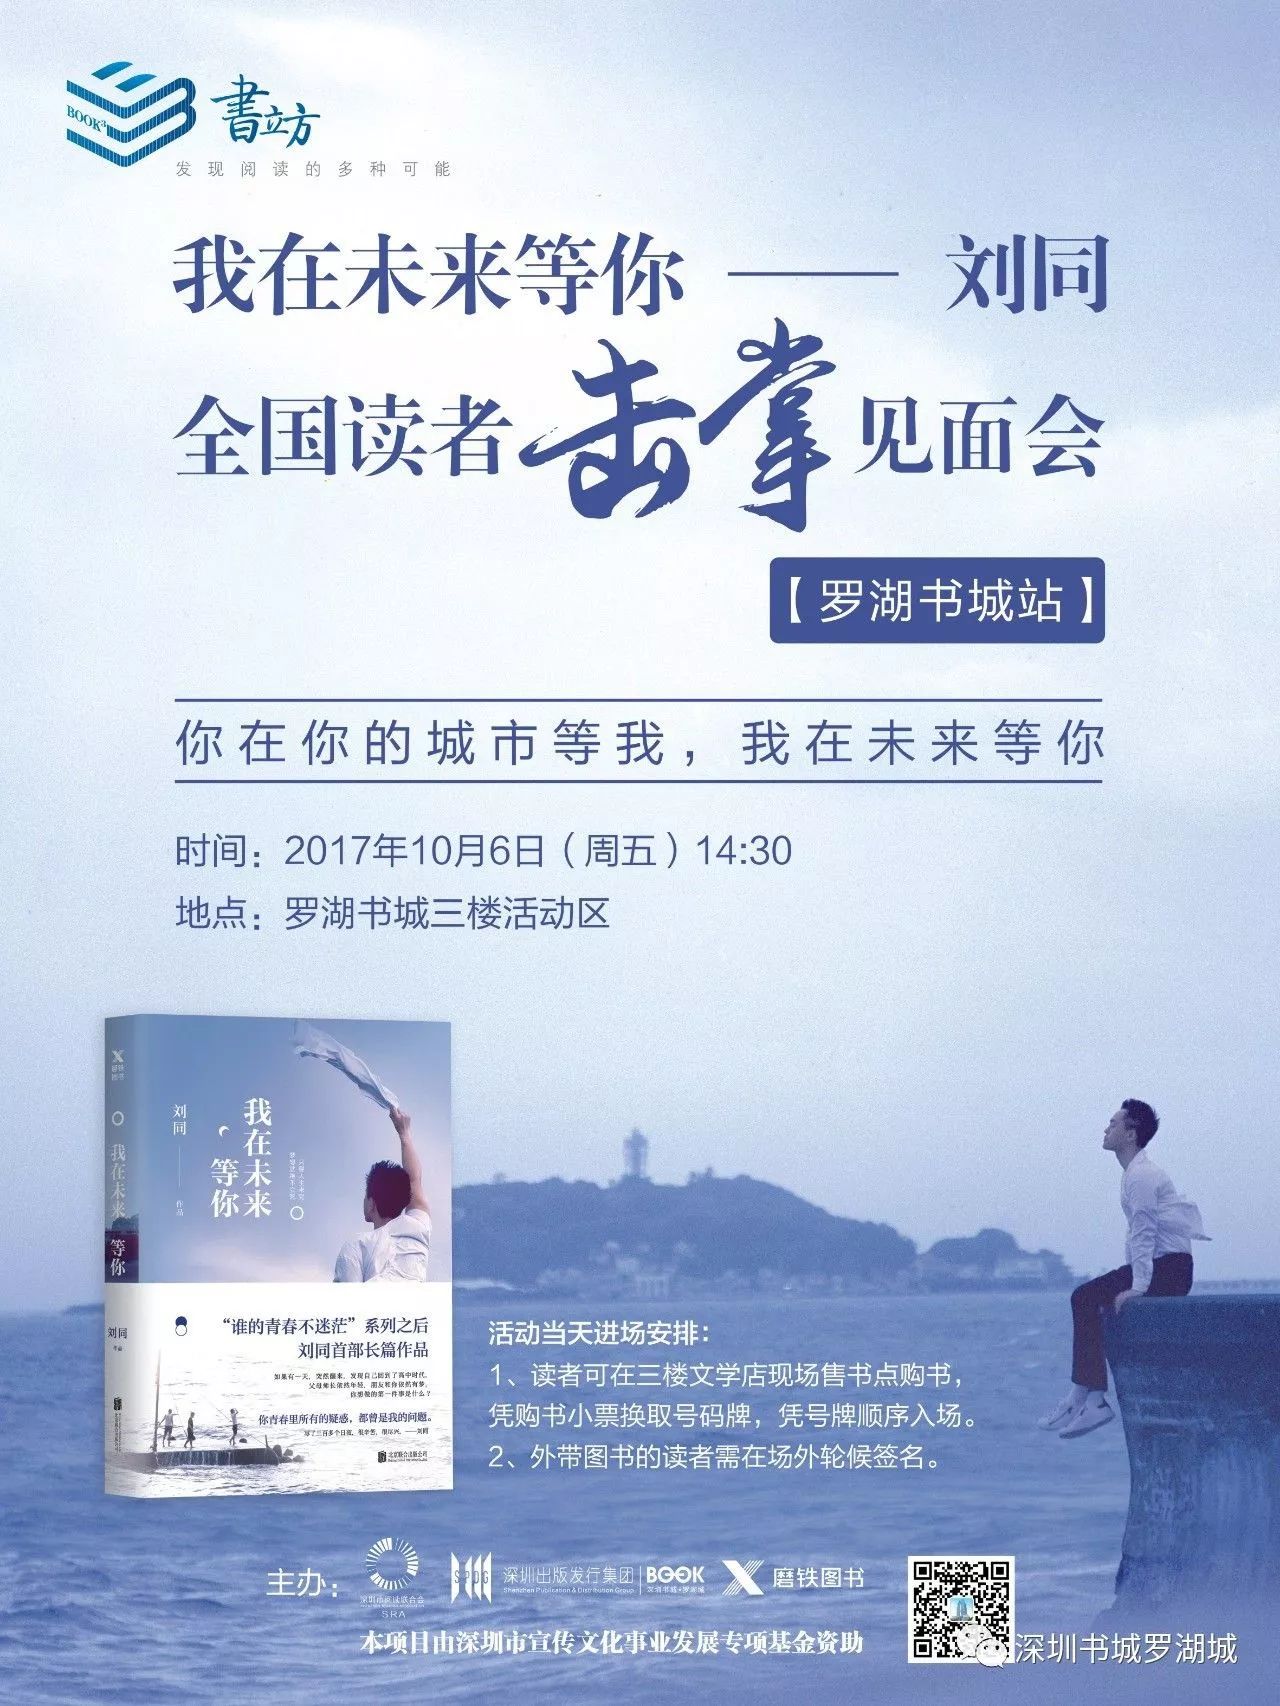 刘同《谁的青春不迷茫》新版发售 共赴十年之约-瓯越读客-温州网